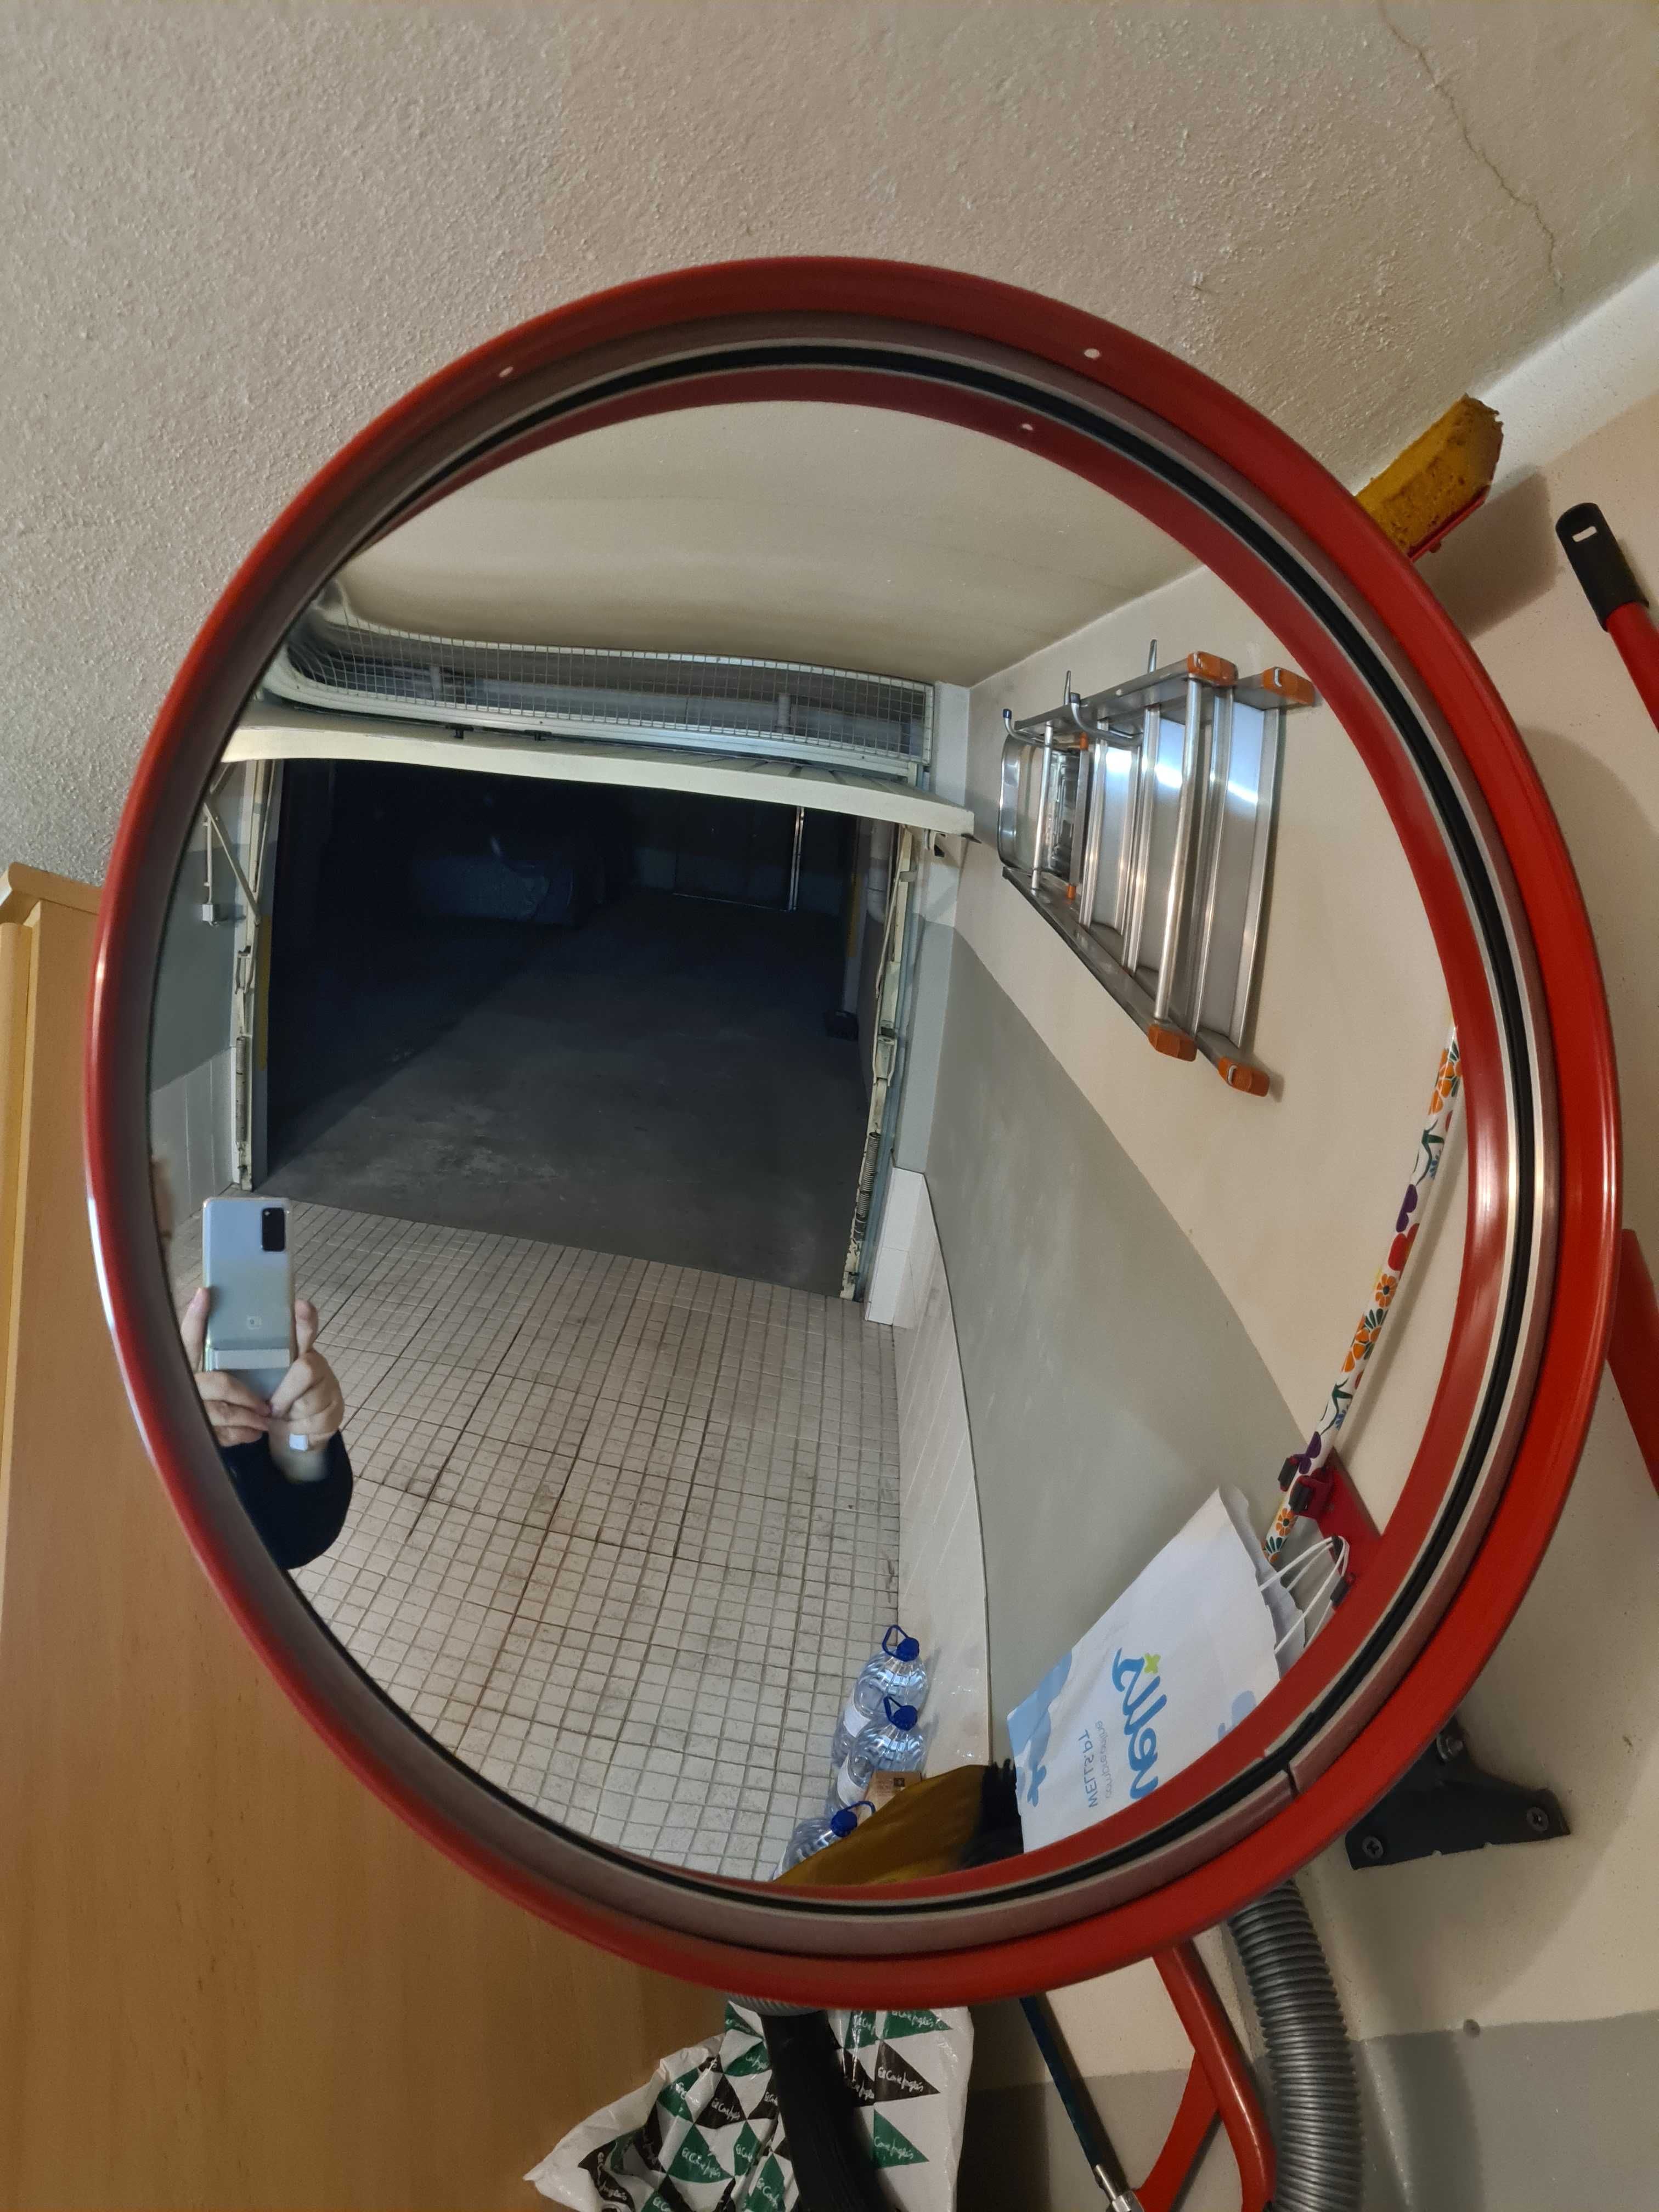 Grande espelho Estacionamento Circulação segura Diâmetro 60cm